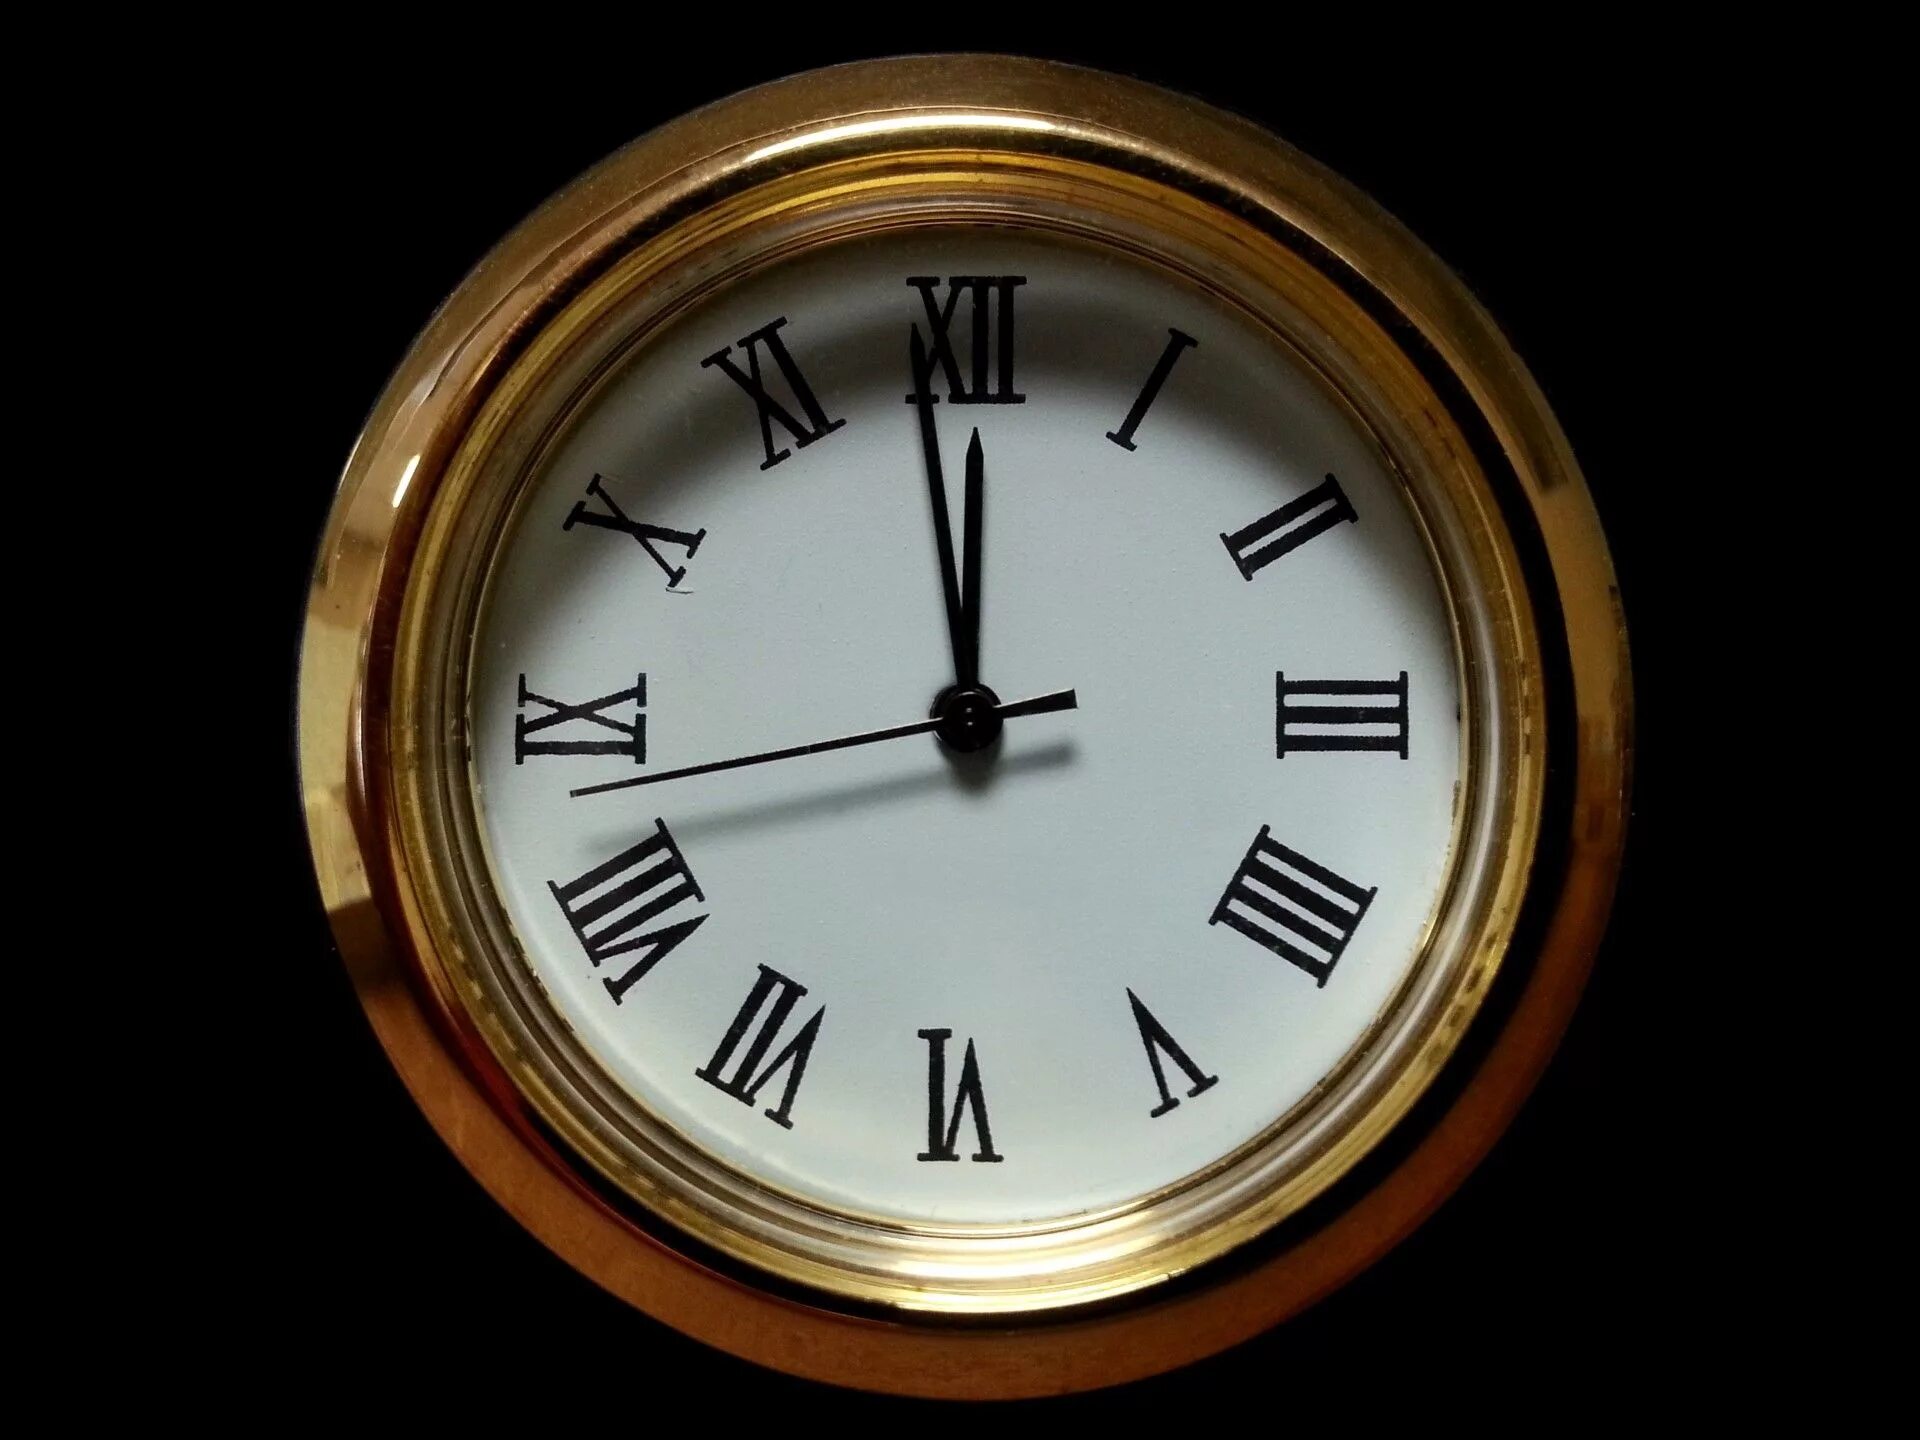 Картинку про часы. Старинные часы. Часы полночь. Часы показывают полночь. Изображение часов.